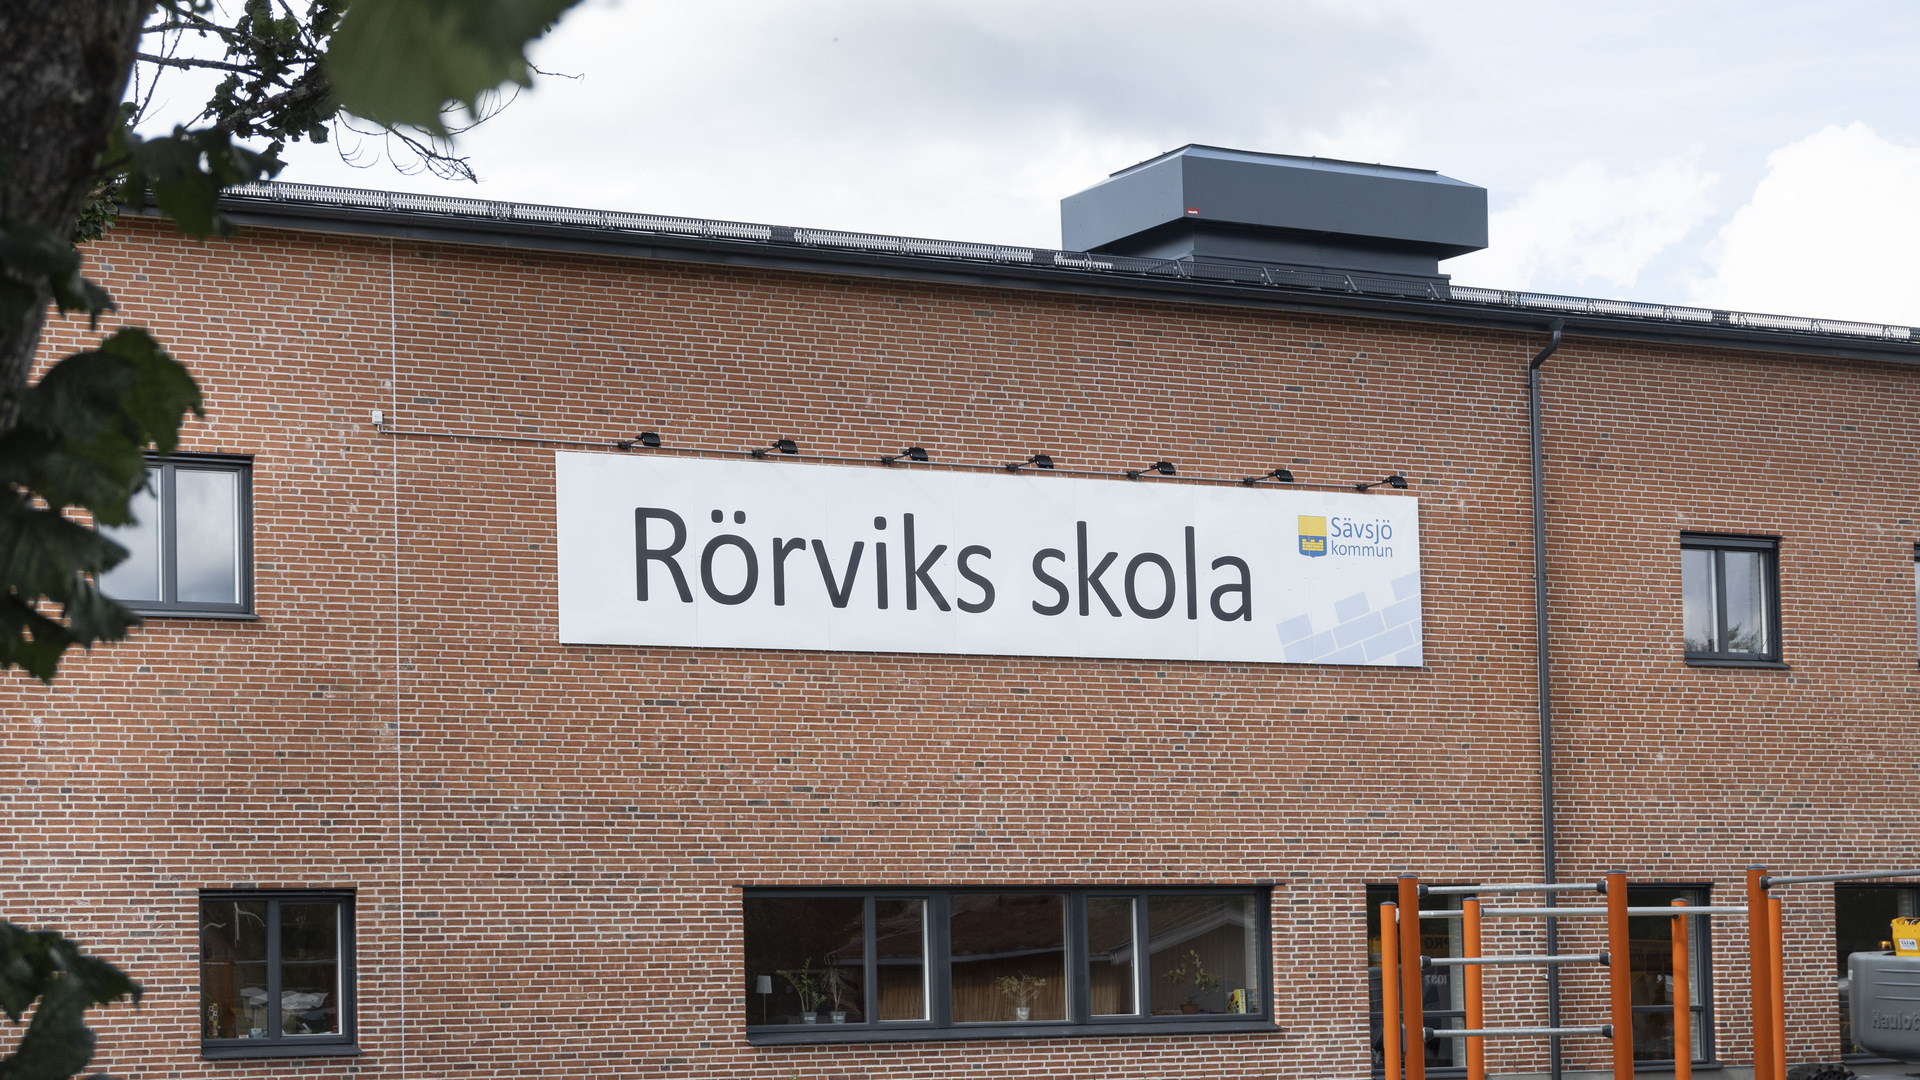 Exteriört Rörviks skola, röd tegelbyggnad, skylt.